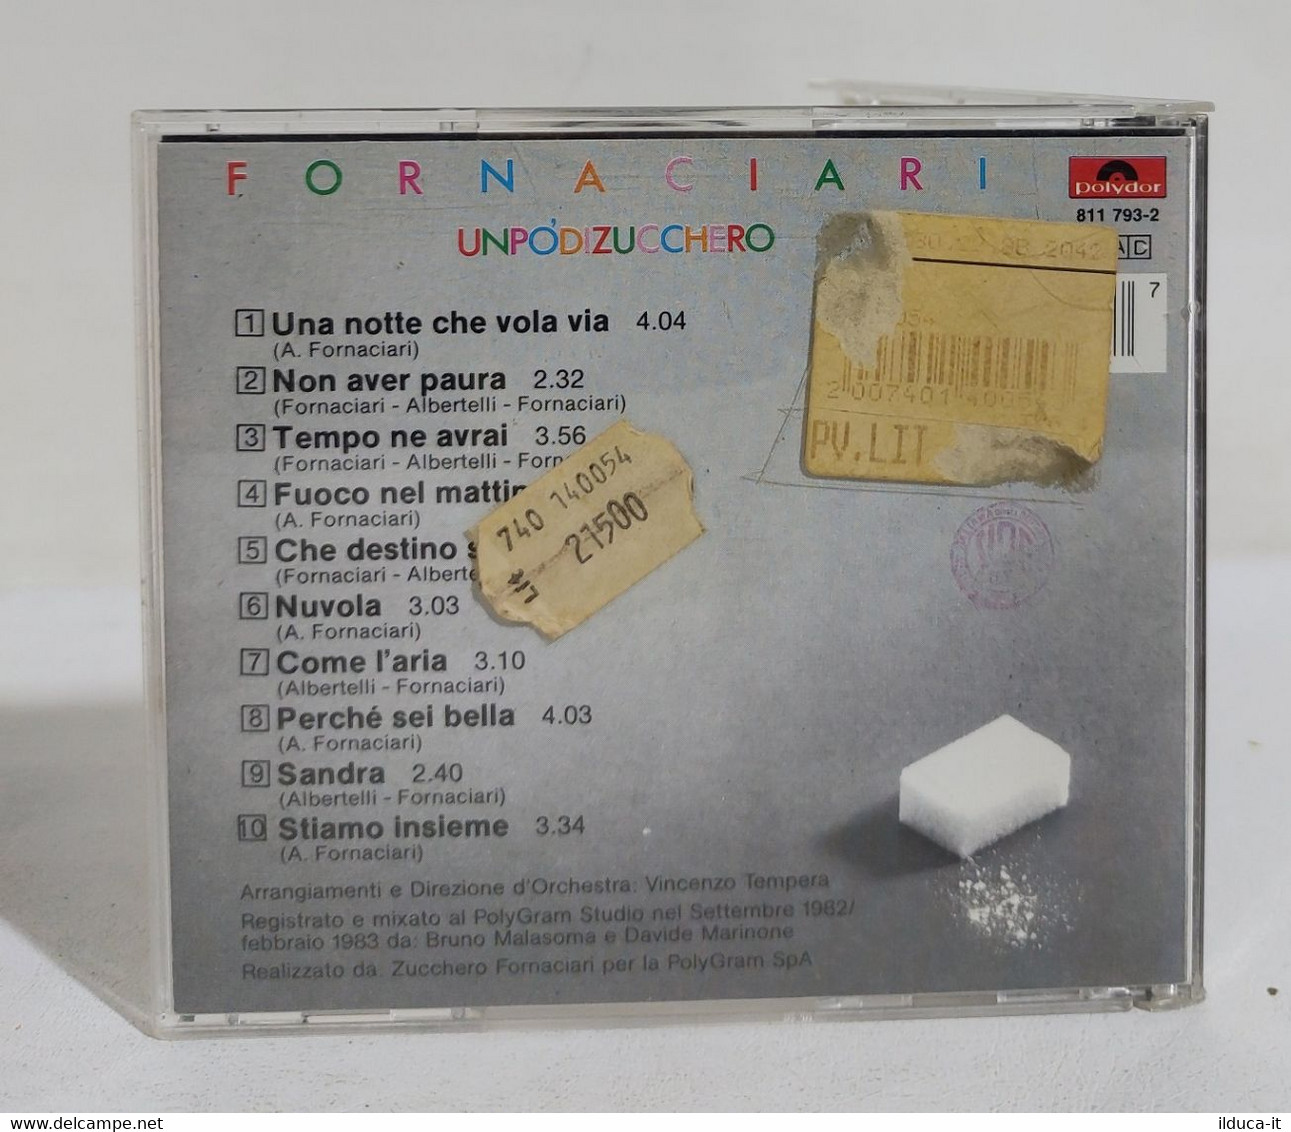 I107821 CD - ZUCCHERO FORNACIARI - Un Po' Di Zucchero - Polydor 1983 - Andere - Italiaans